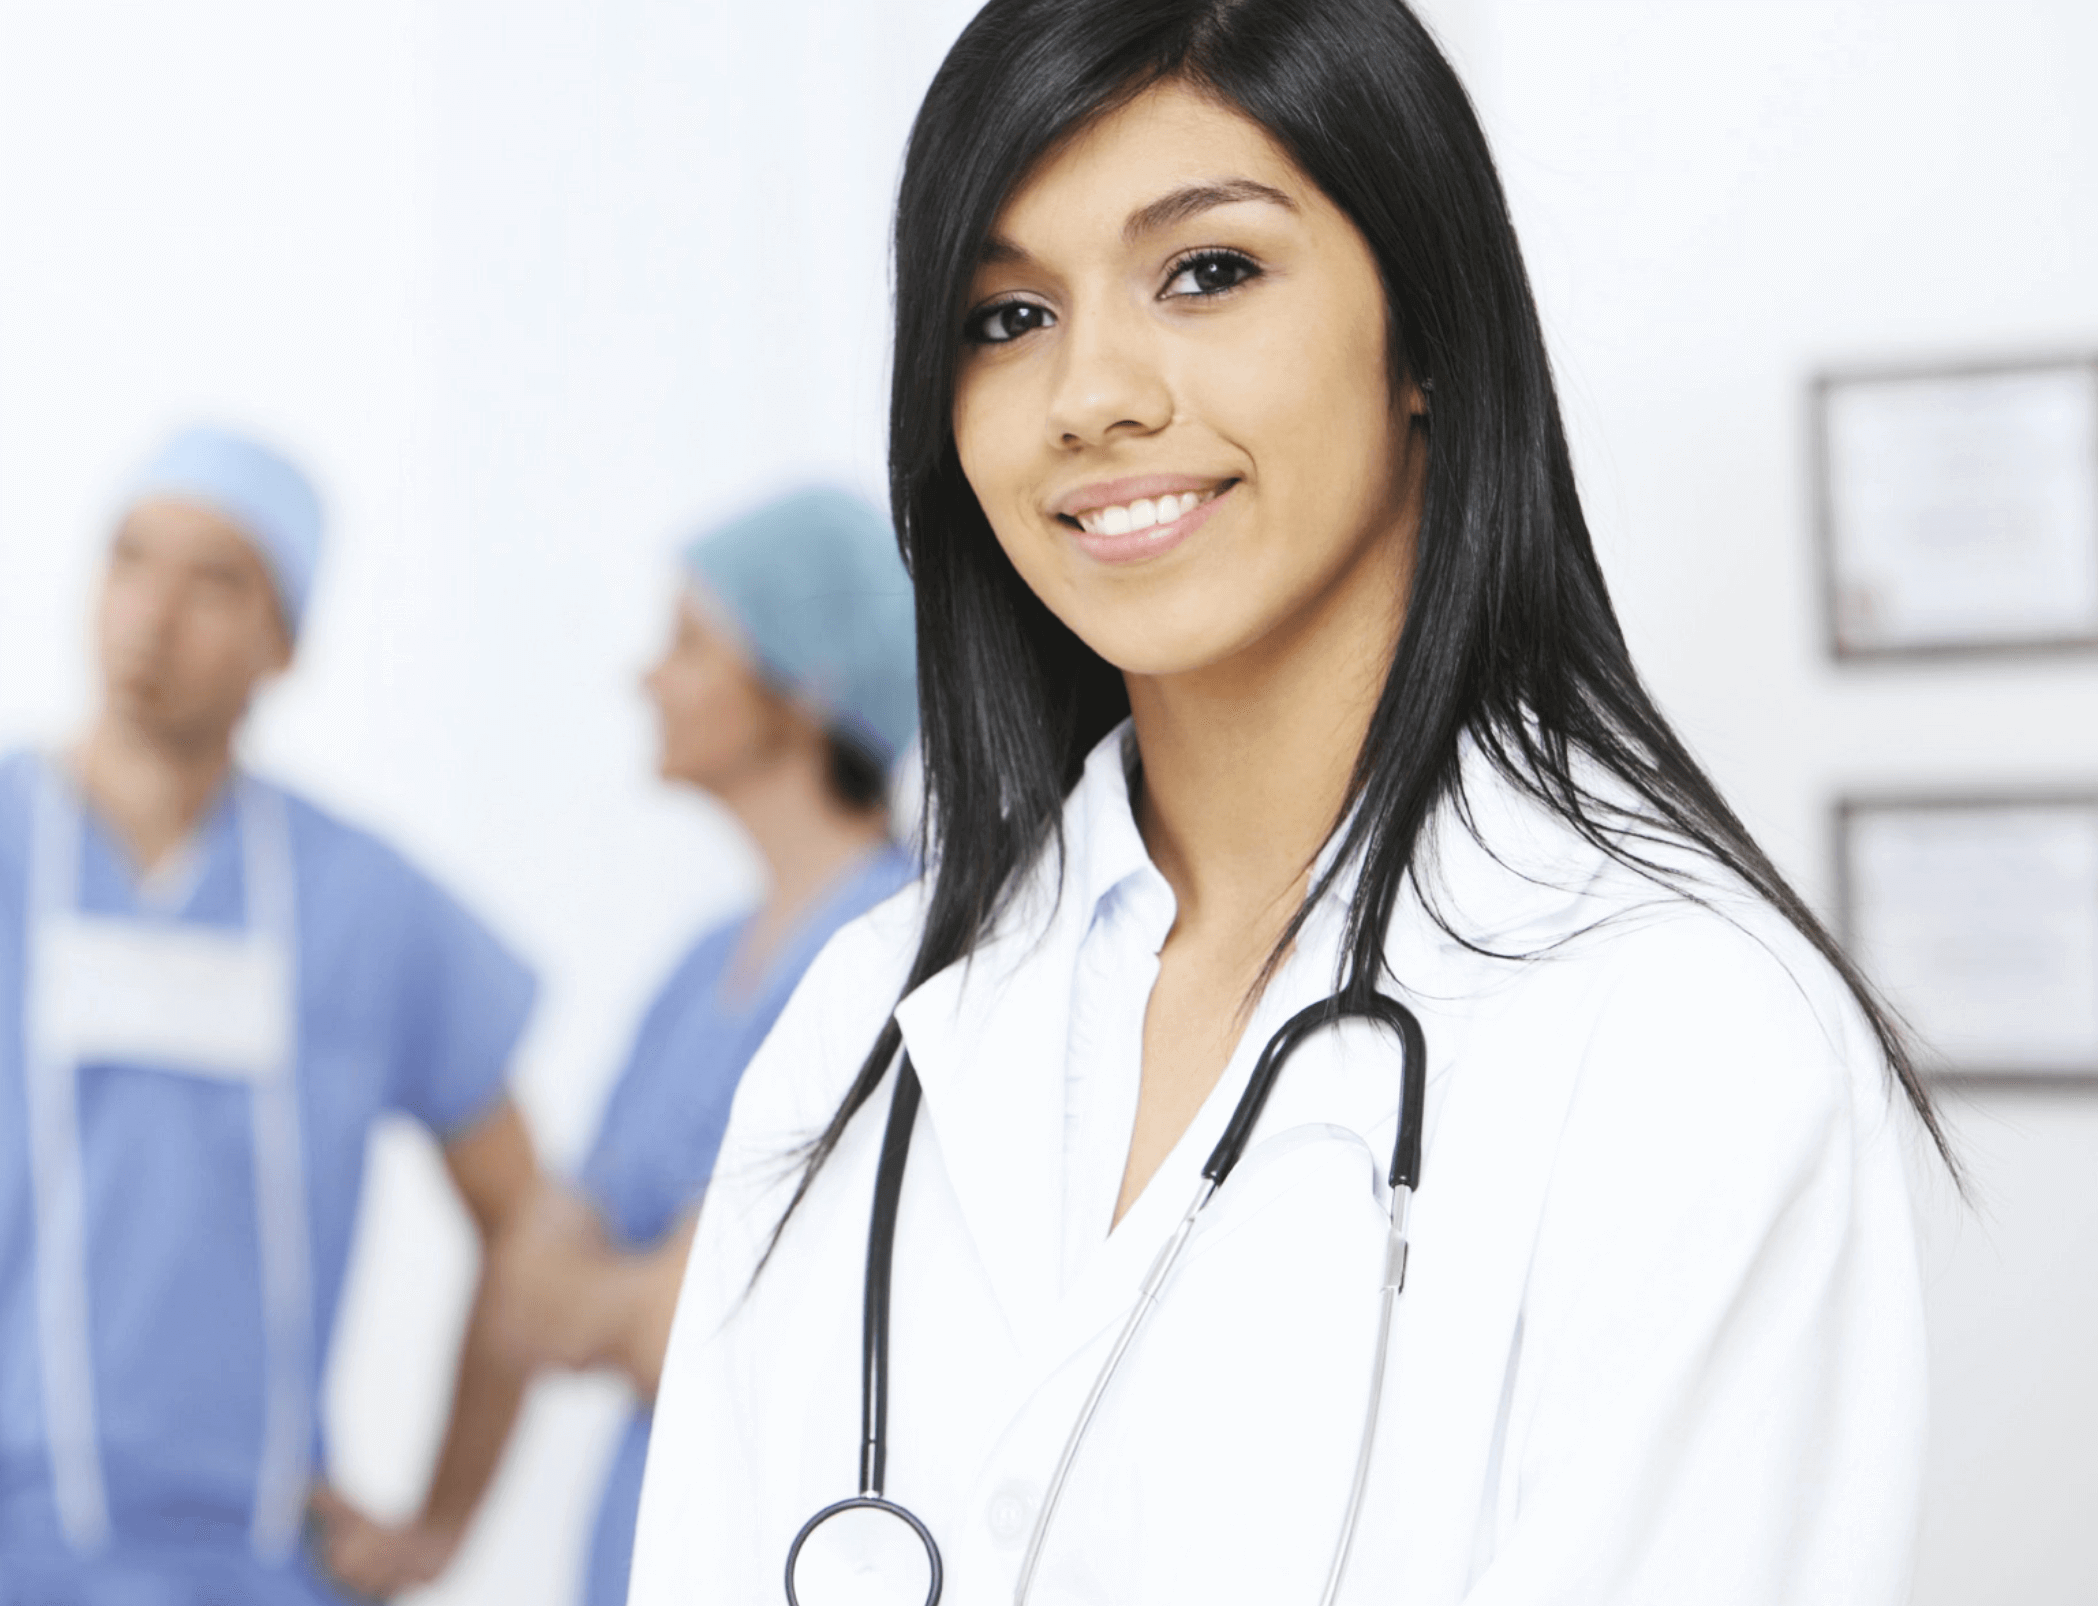 concierge courses for nurses